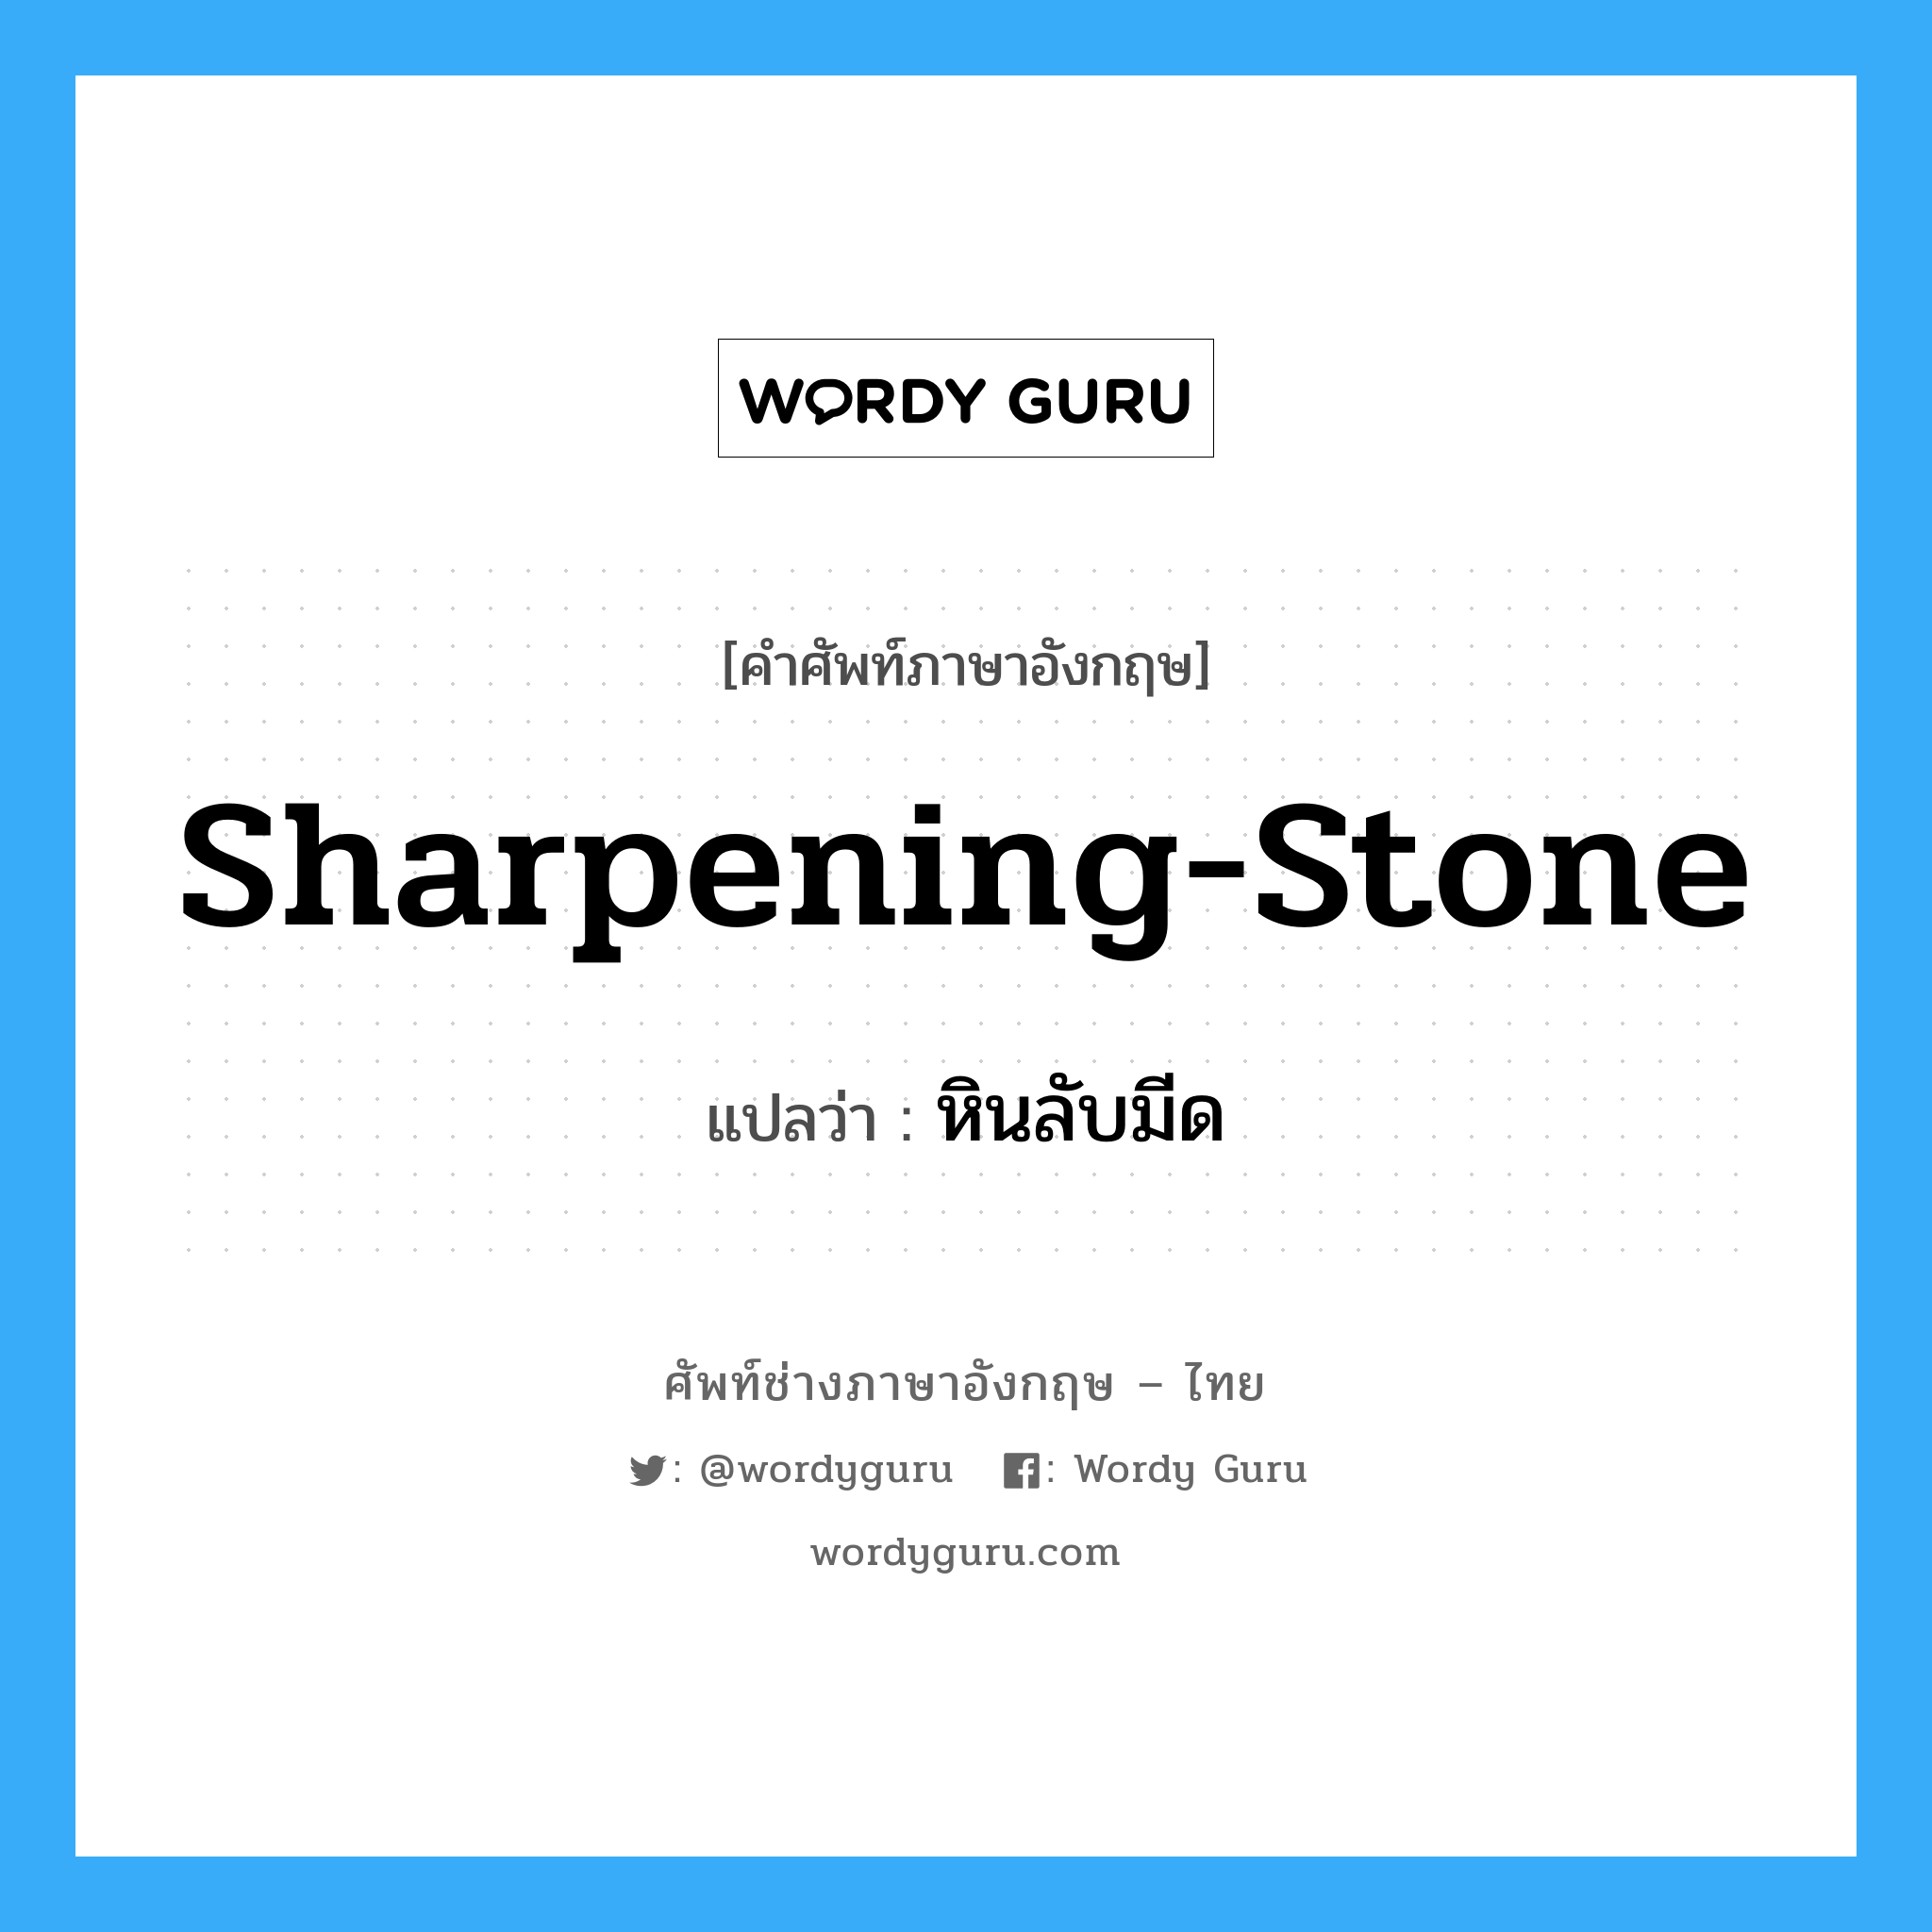 หินลับมีด ภาษาอังกฤษ?, คำศัพท์ช่างภาษาอังกฤษ - ไทย หินลับมีด คำศัพท์ภาษาอังกฤษ หินลับมีด แปลว่า sharpening-stone